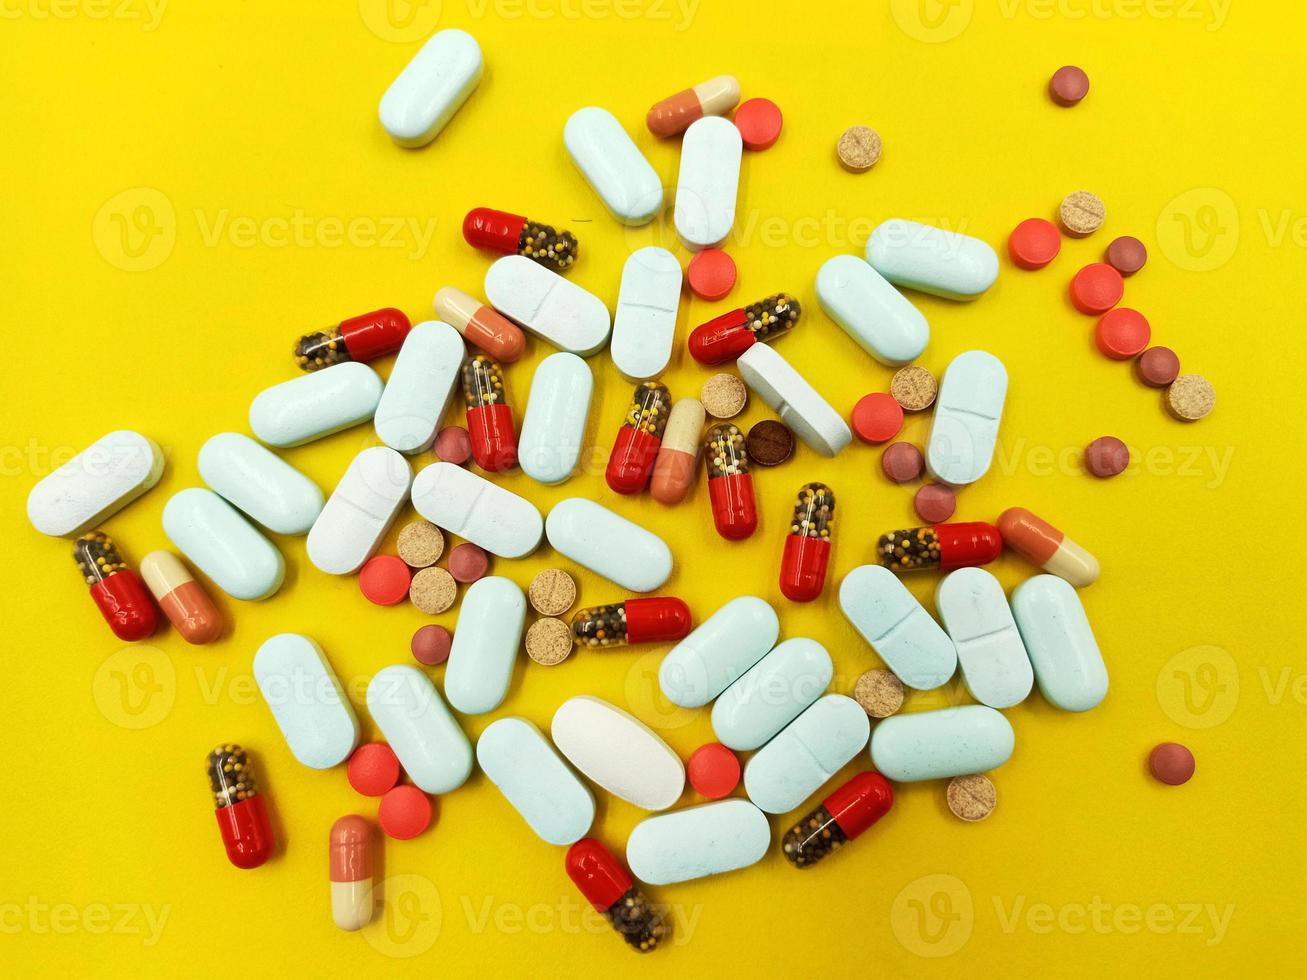 Assortiment de pilules, comprimés et gélules de médicaments pharmaceutiques photo